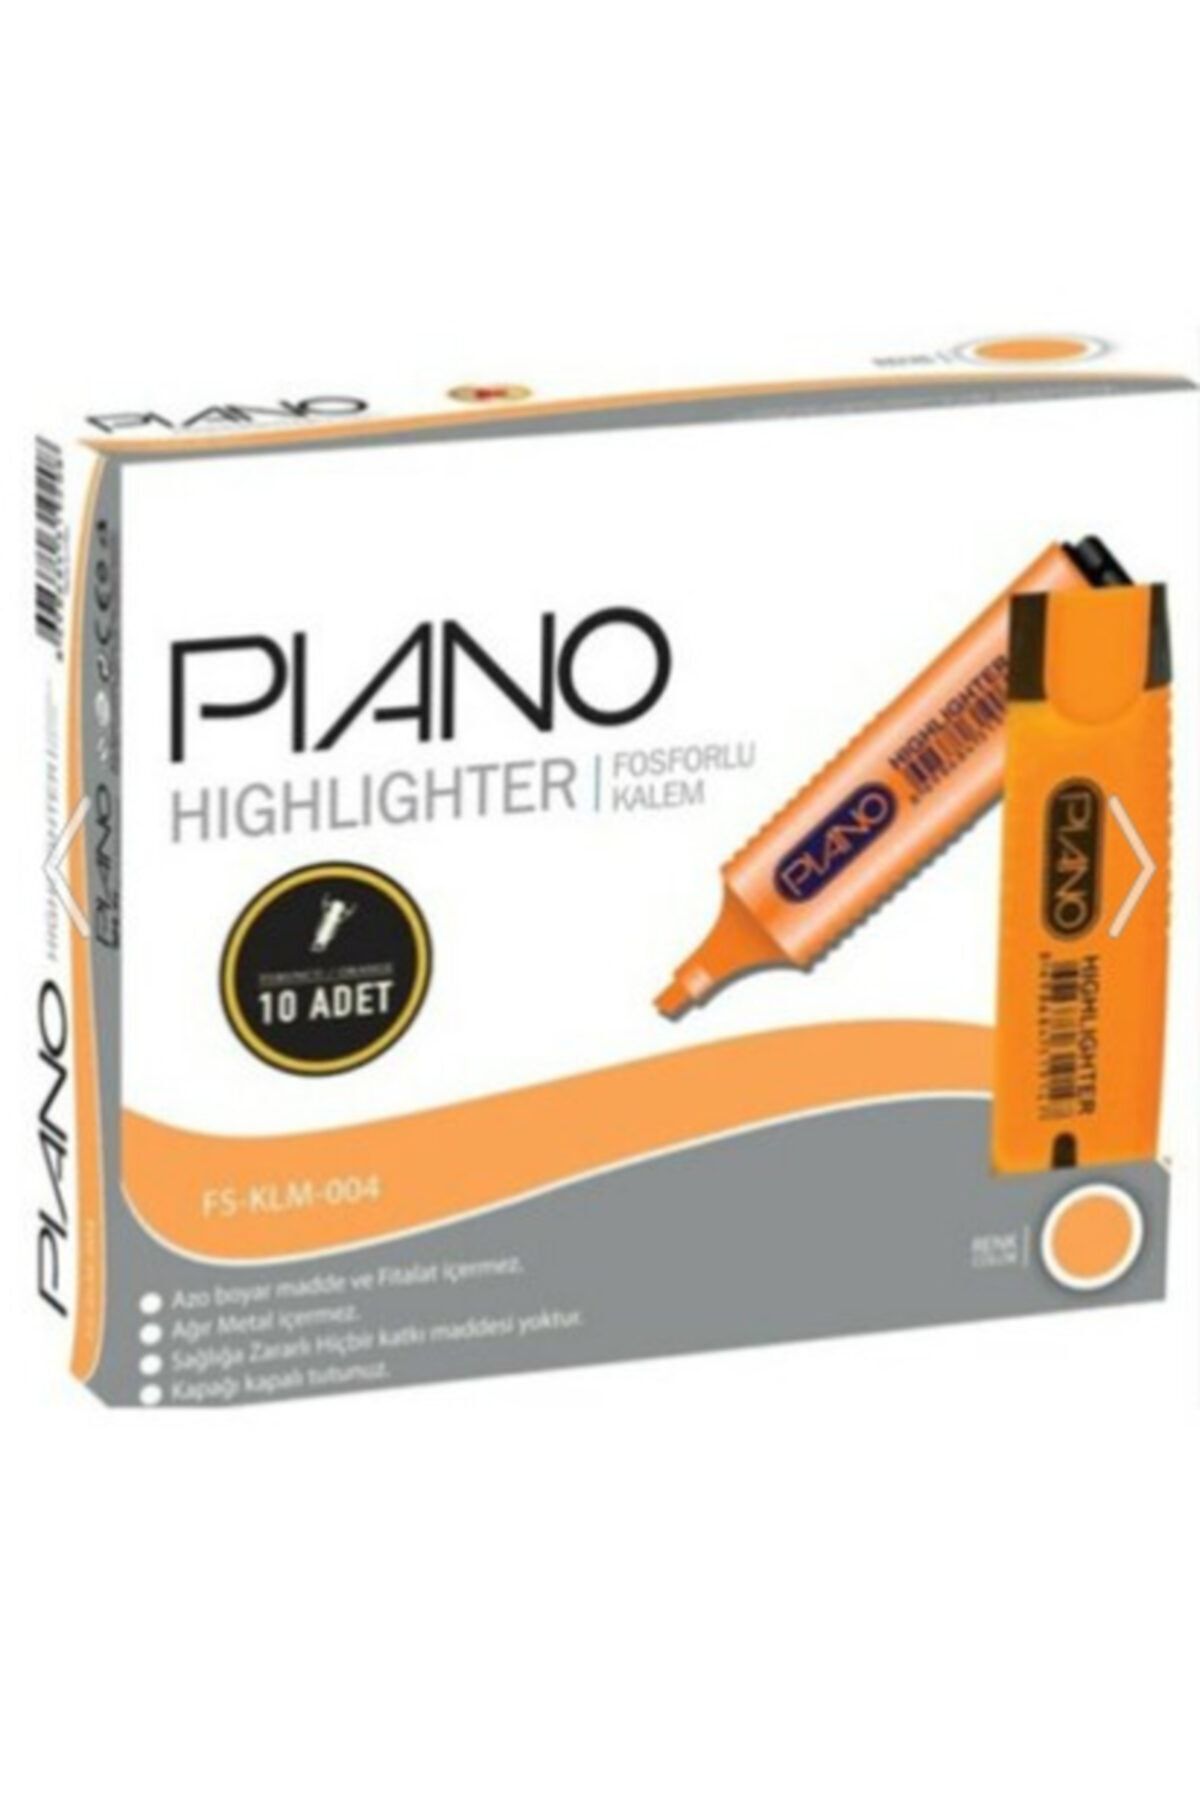 Piano Pıano Fosforlu Kalem Turuncu 10 Adet ( 1 Paket 10 Adet )